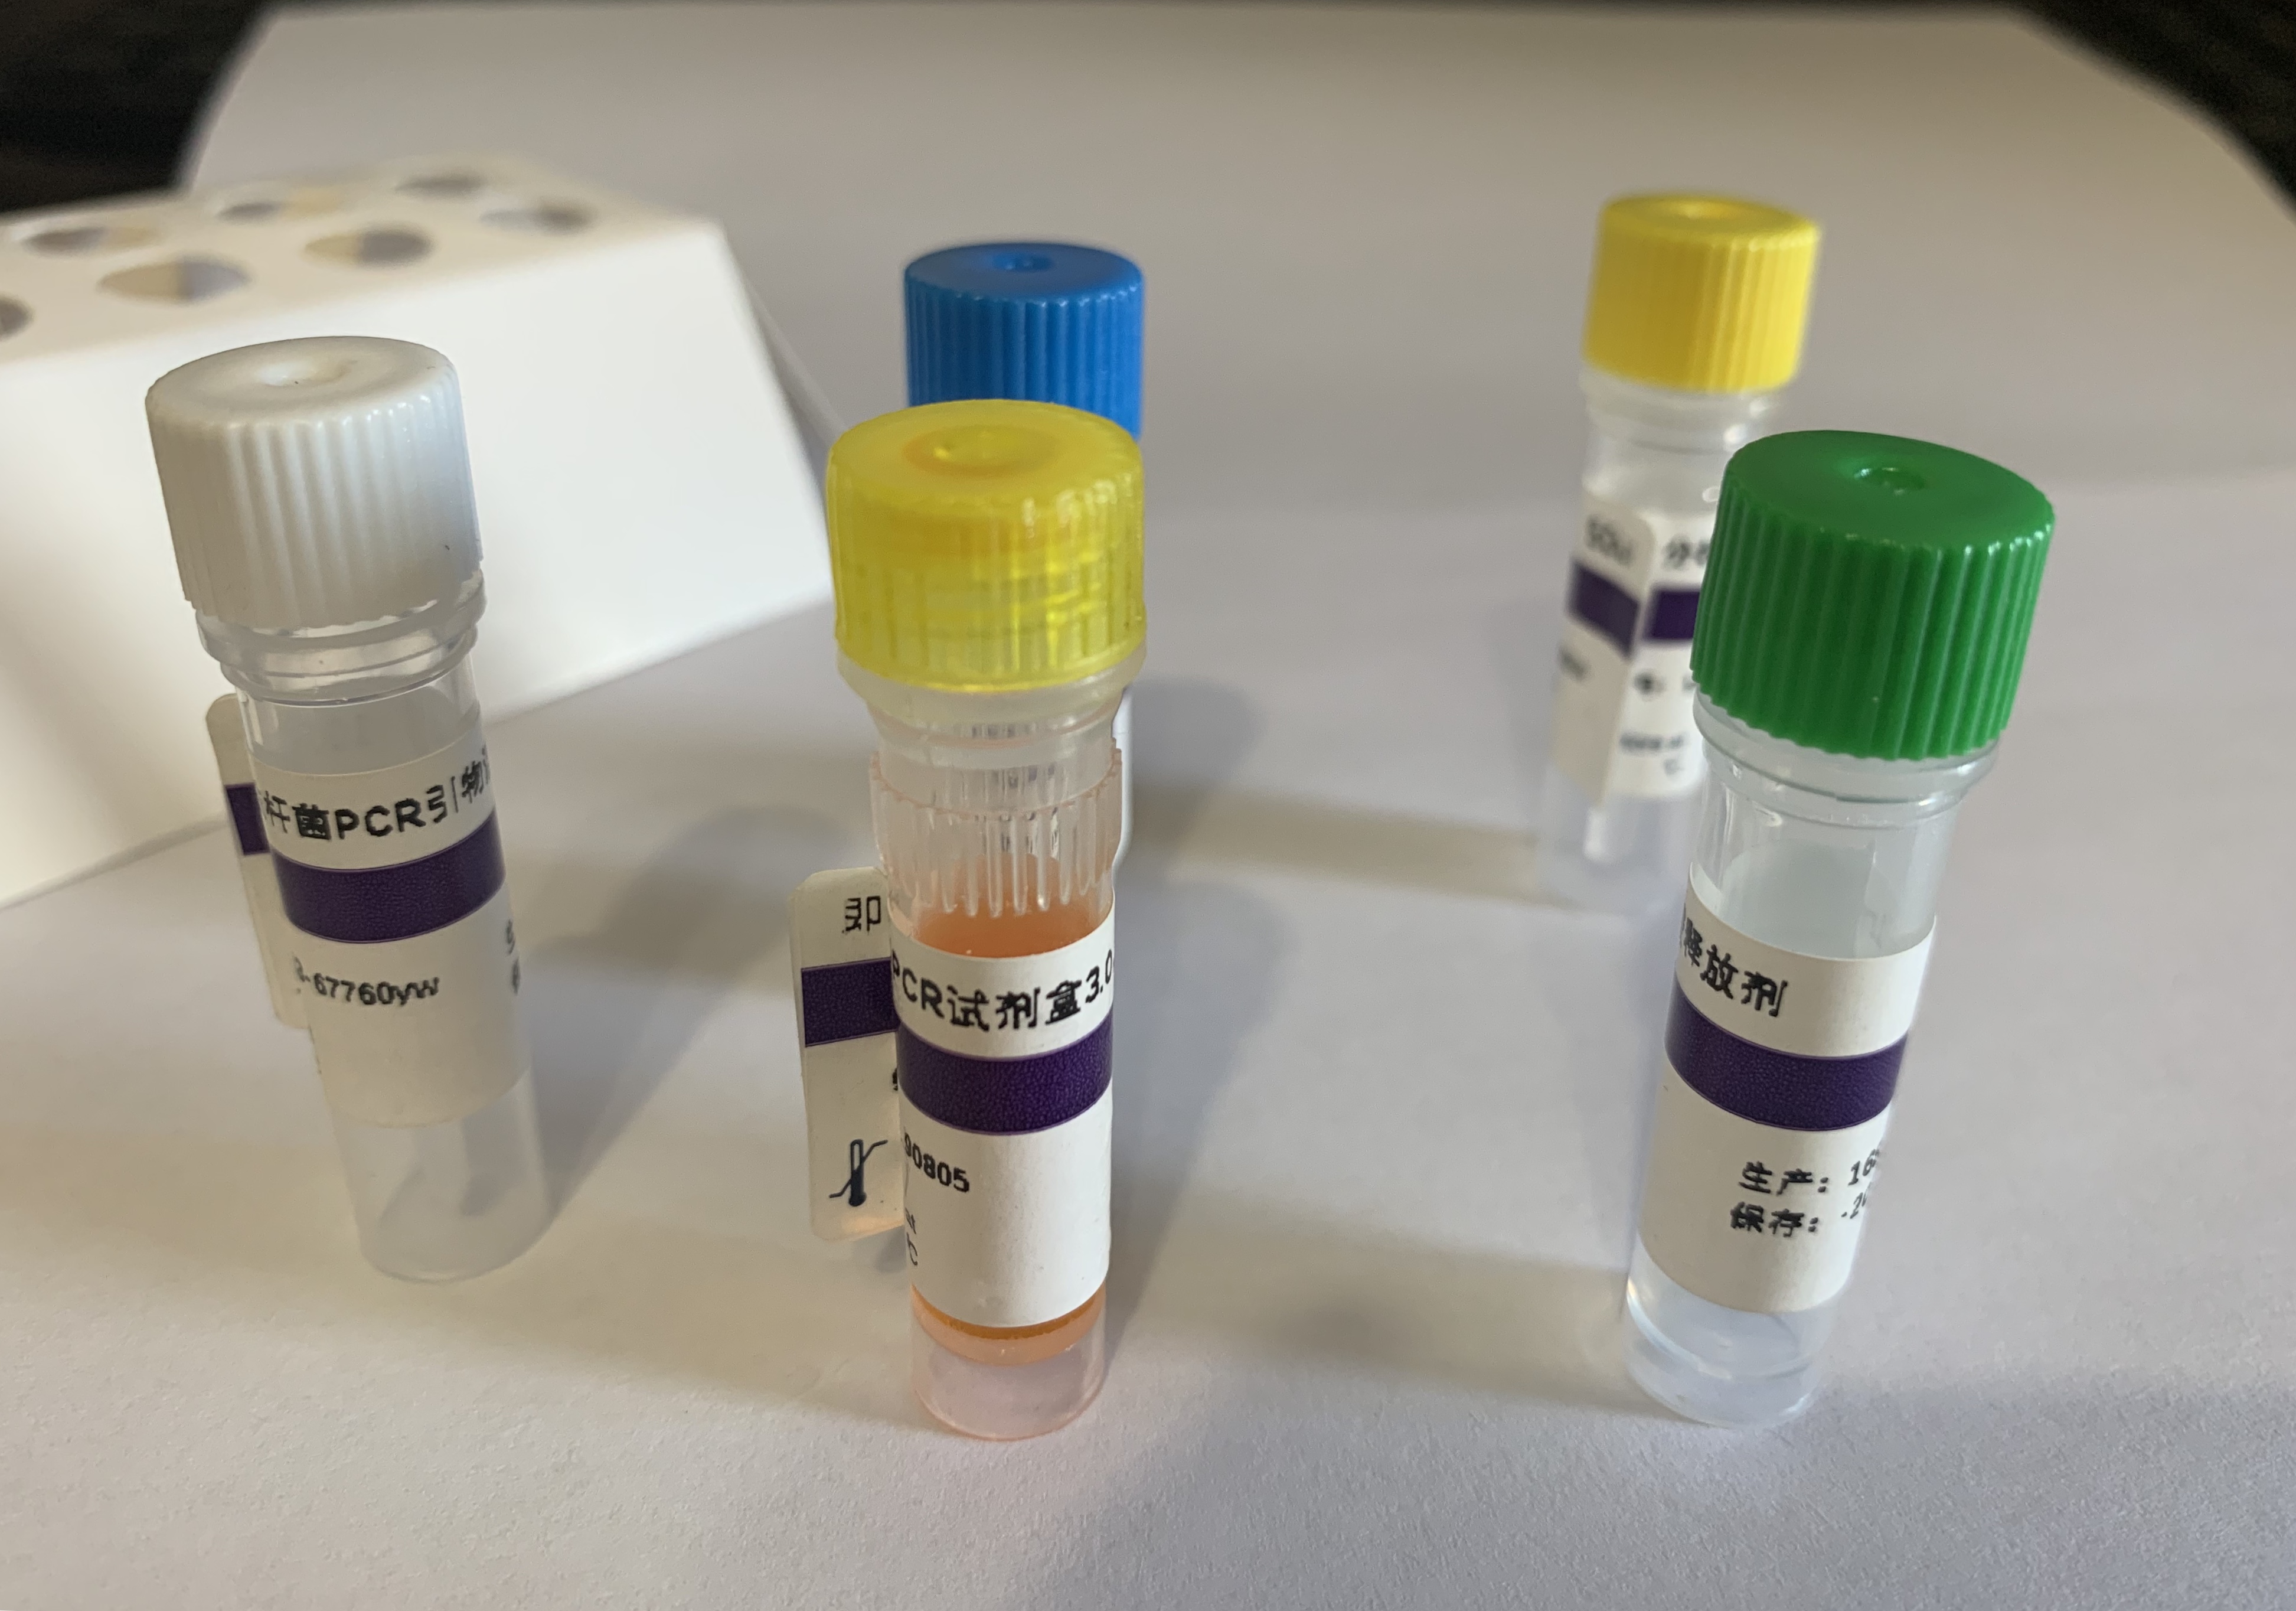 人副流感病毒3型探针法荧光定量RT-PCR试剂盒